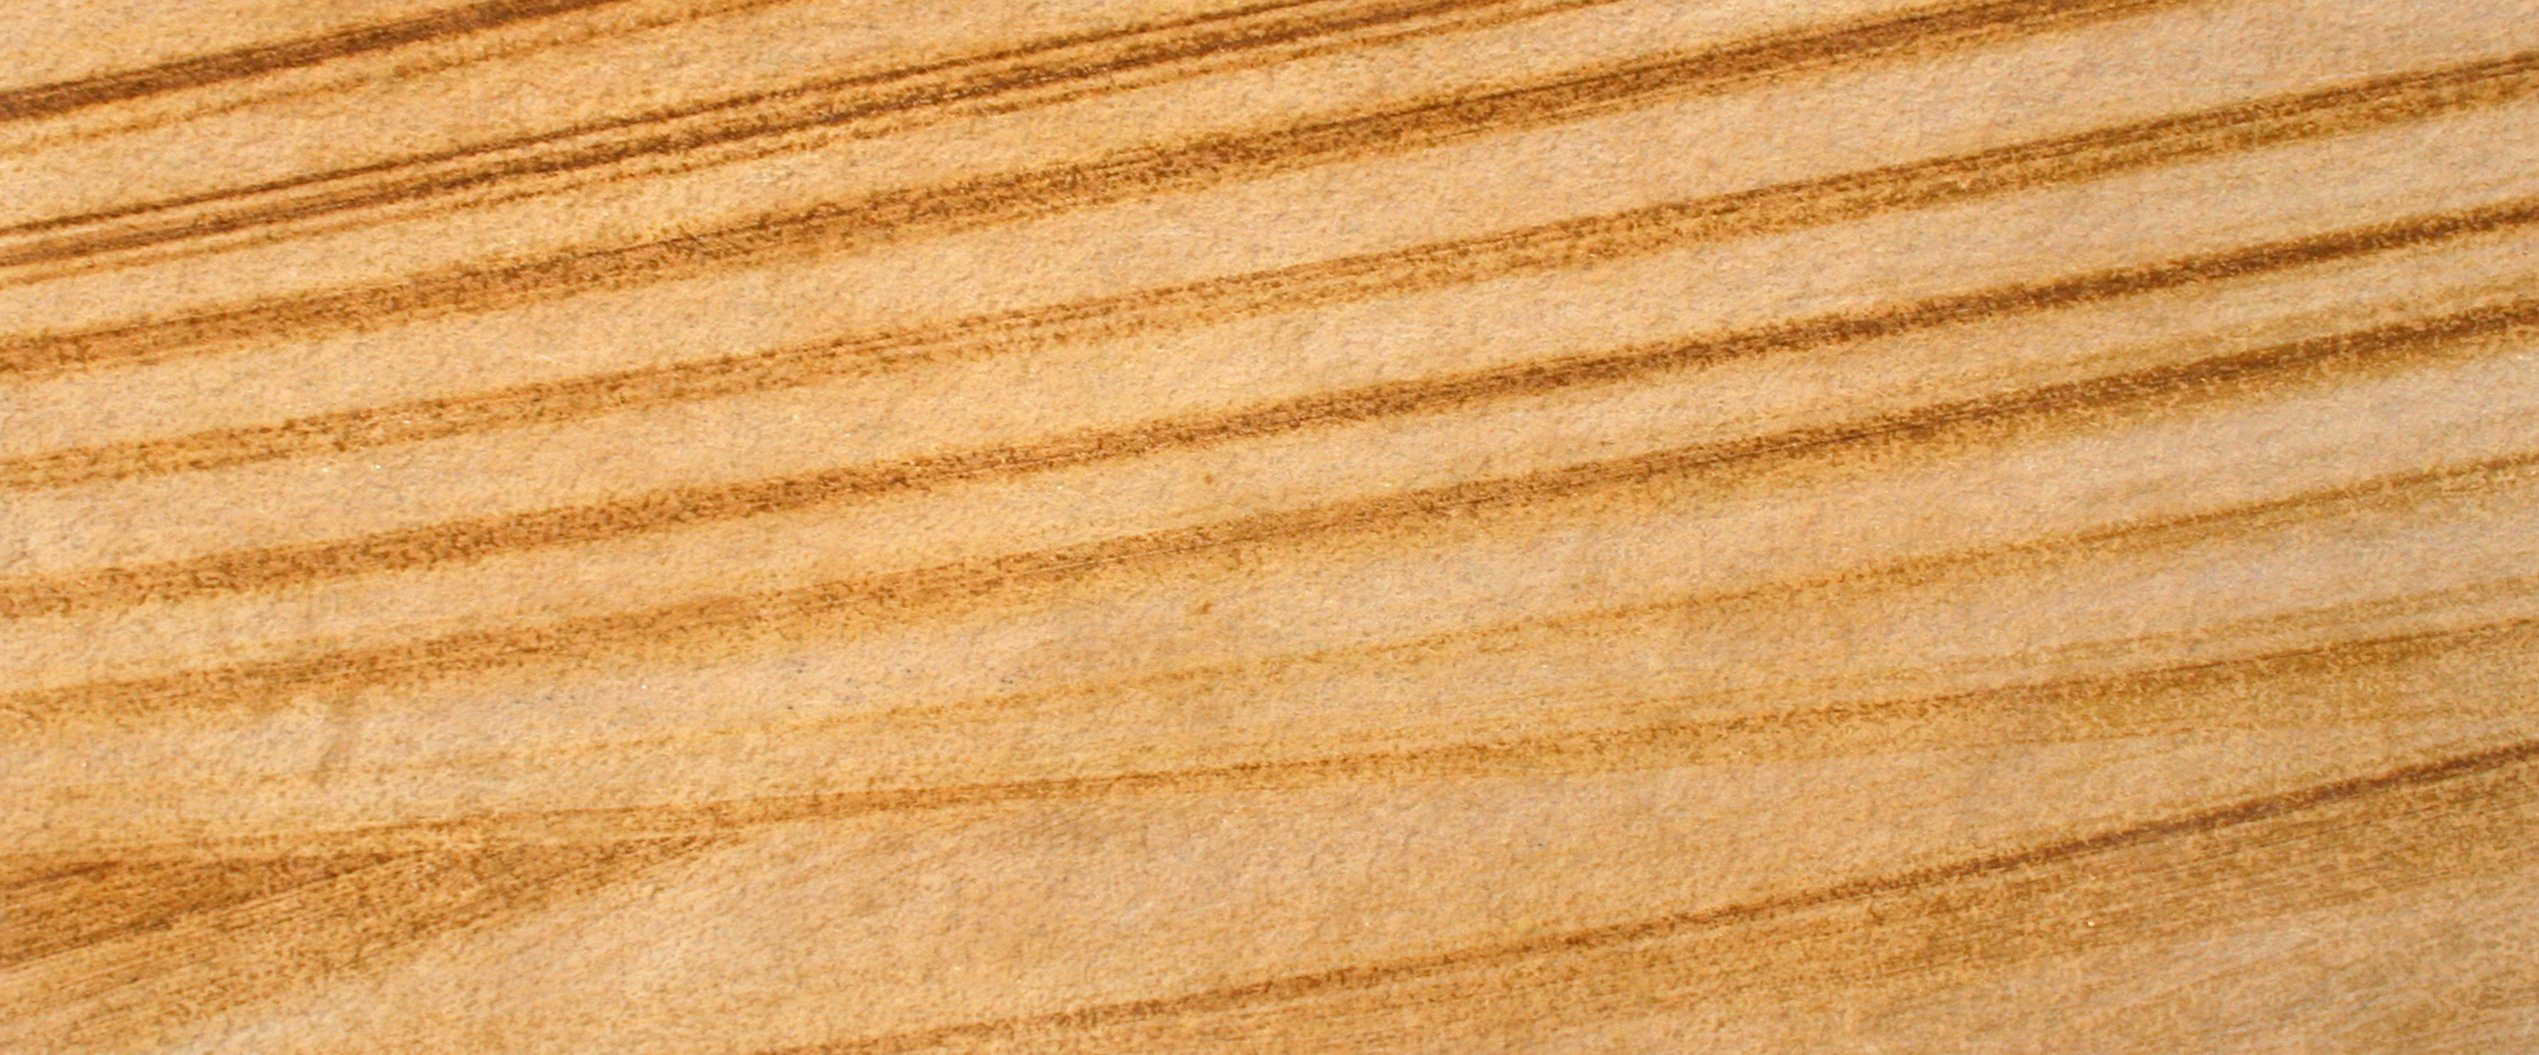 Slate Lite Dekorpaneele Teakwood, BxL: 61x122 cm, 0,74 qm, (1-tlg) aus Echtstein